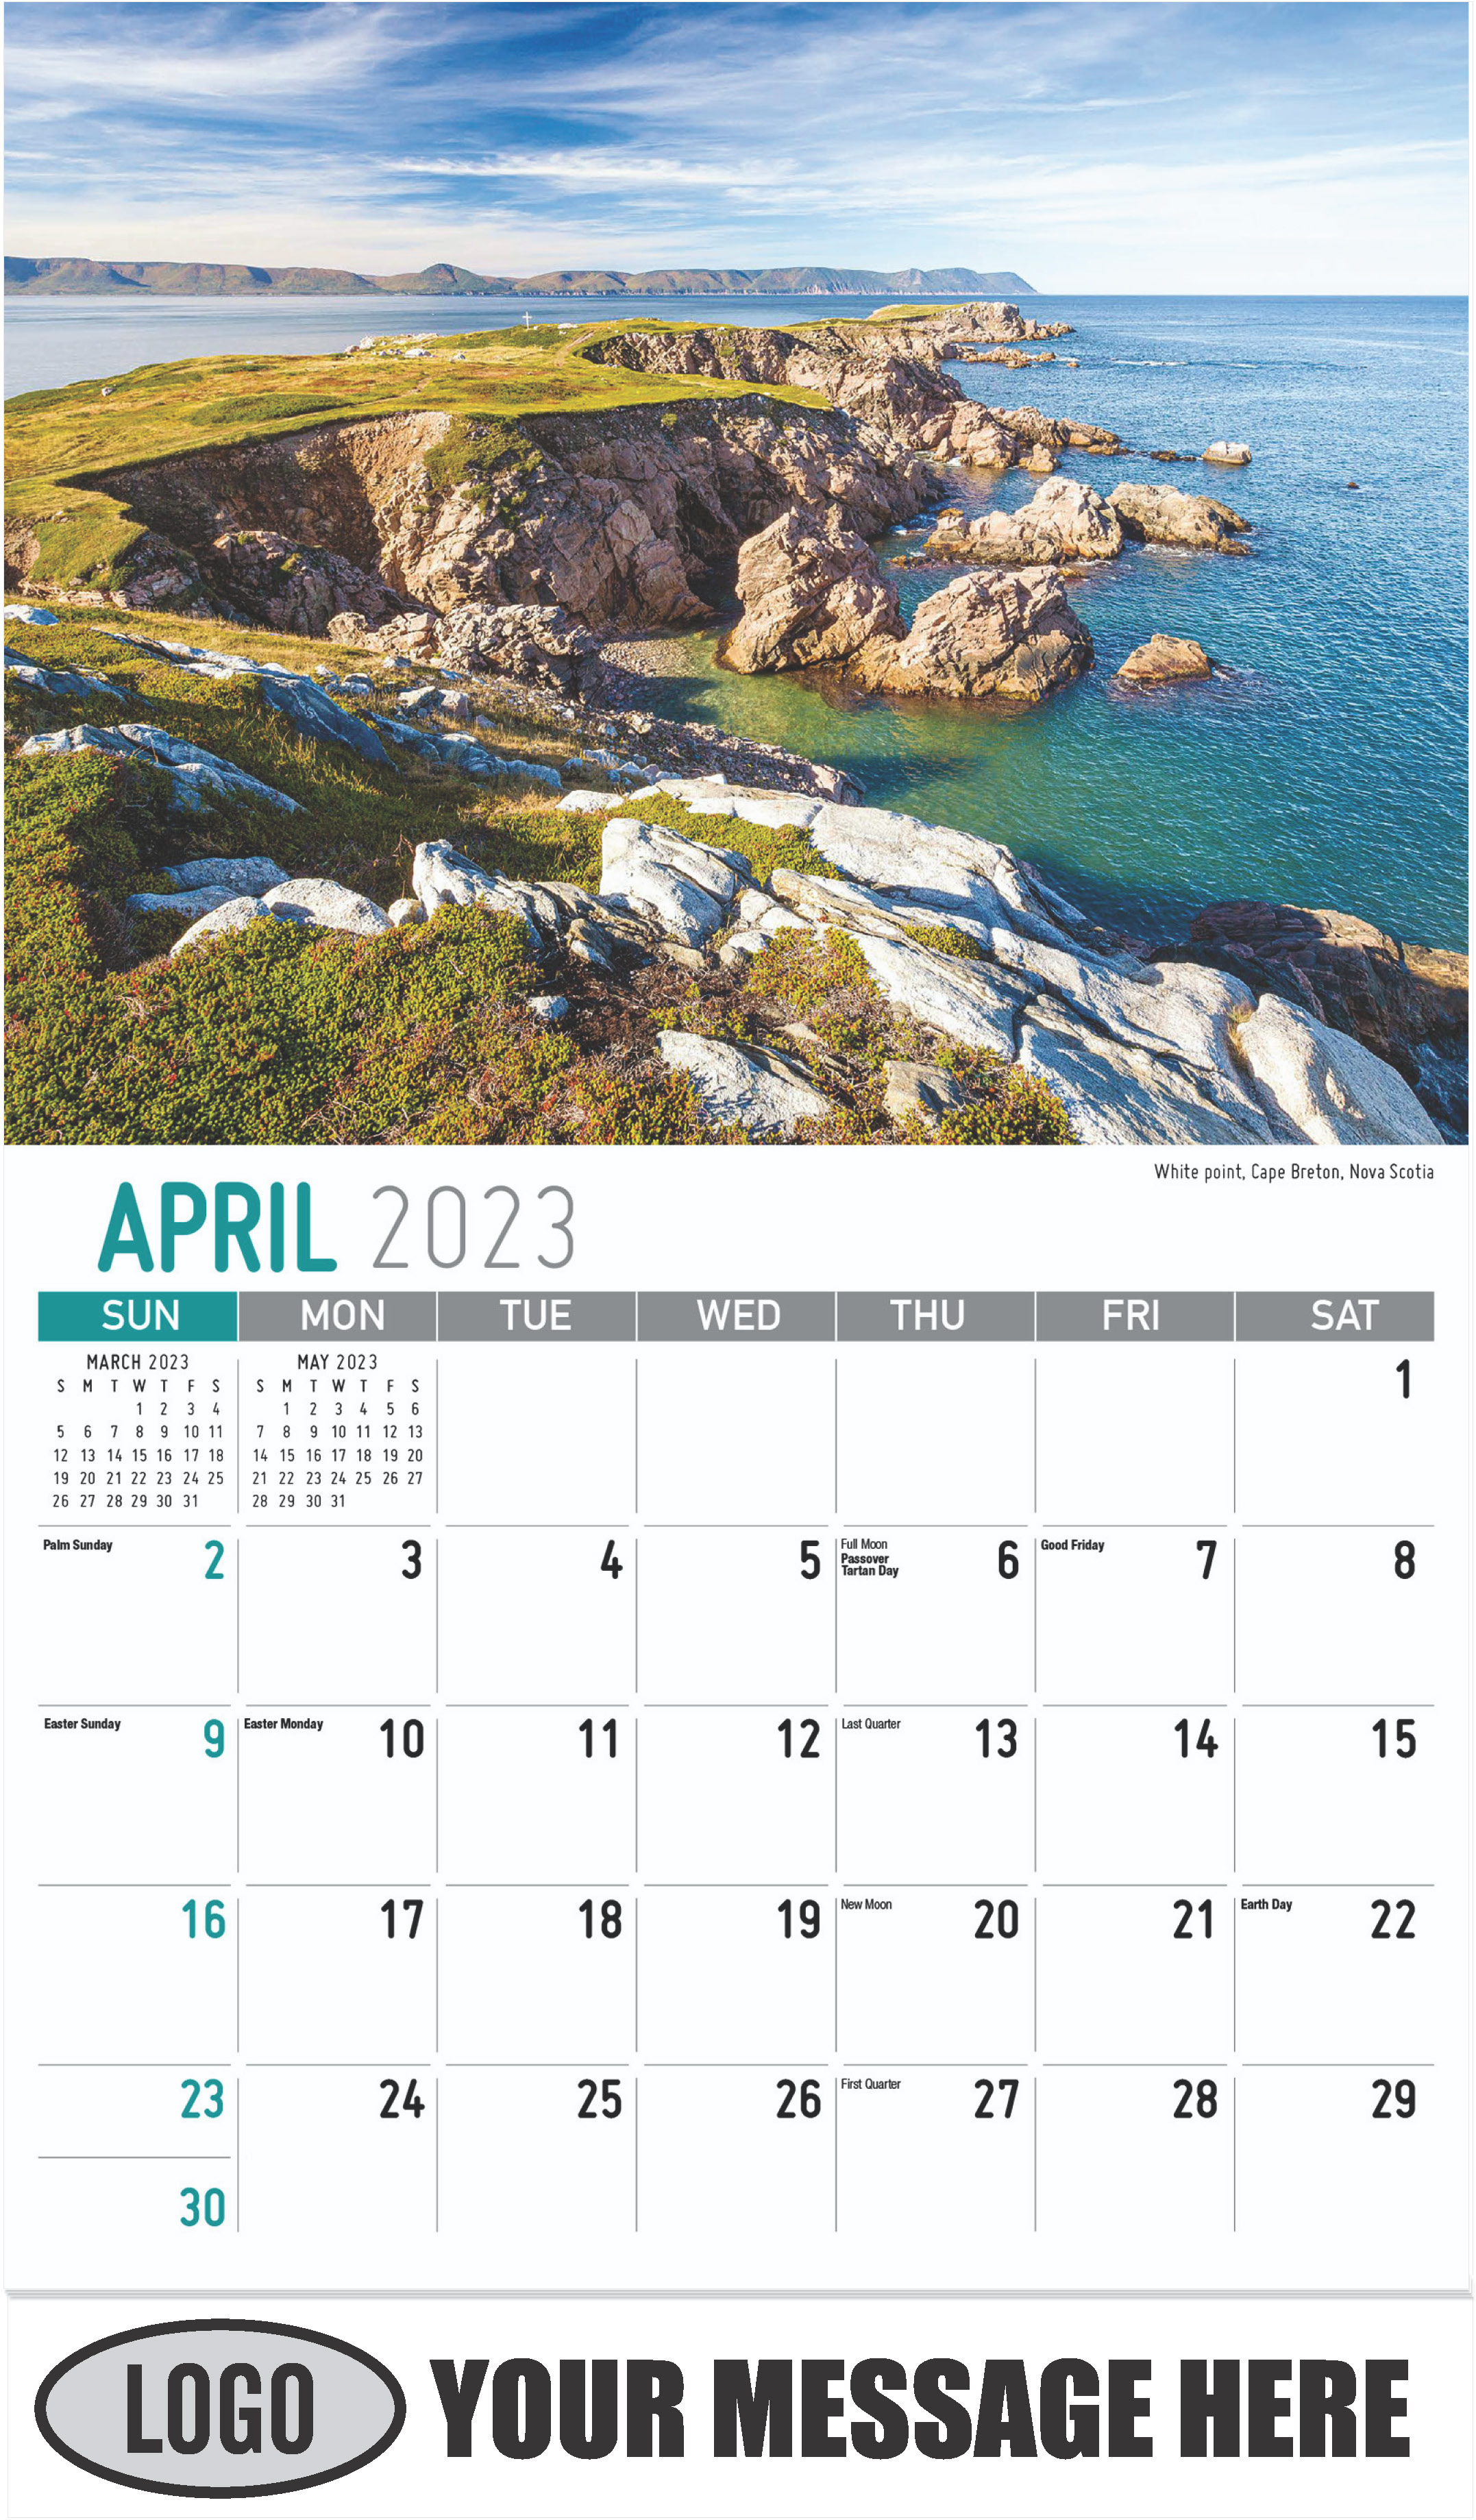 White point, Cape Breton, Nova Scotia, Canada - April - Atlantic Canada 2023 Promotional Calendar